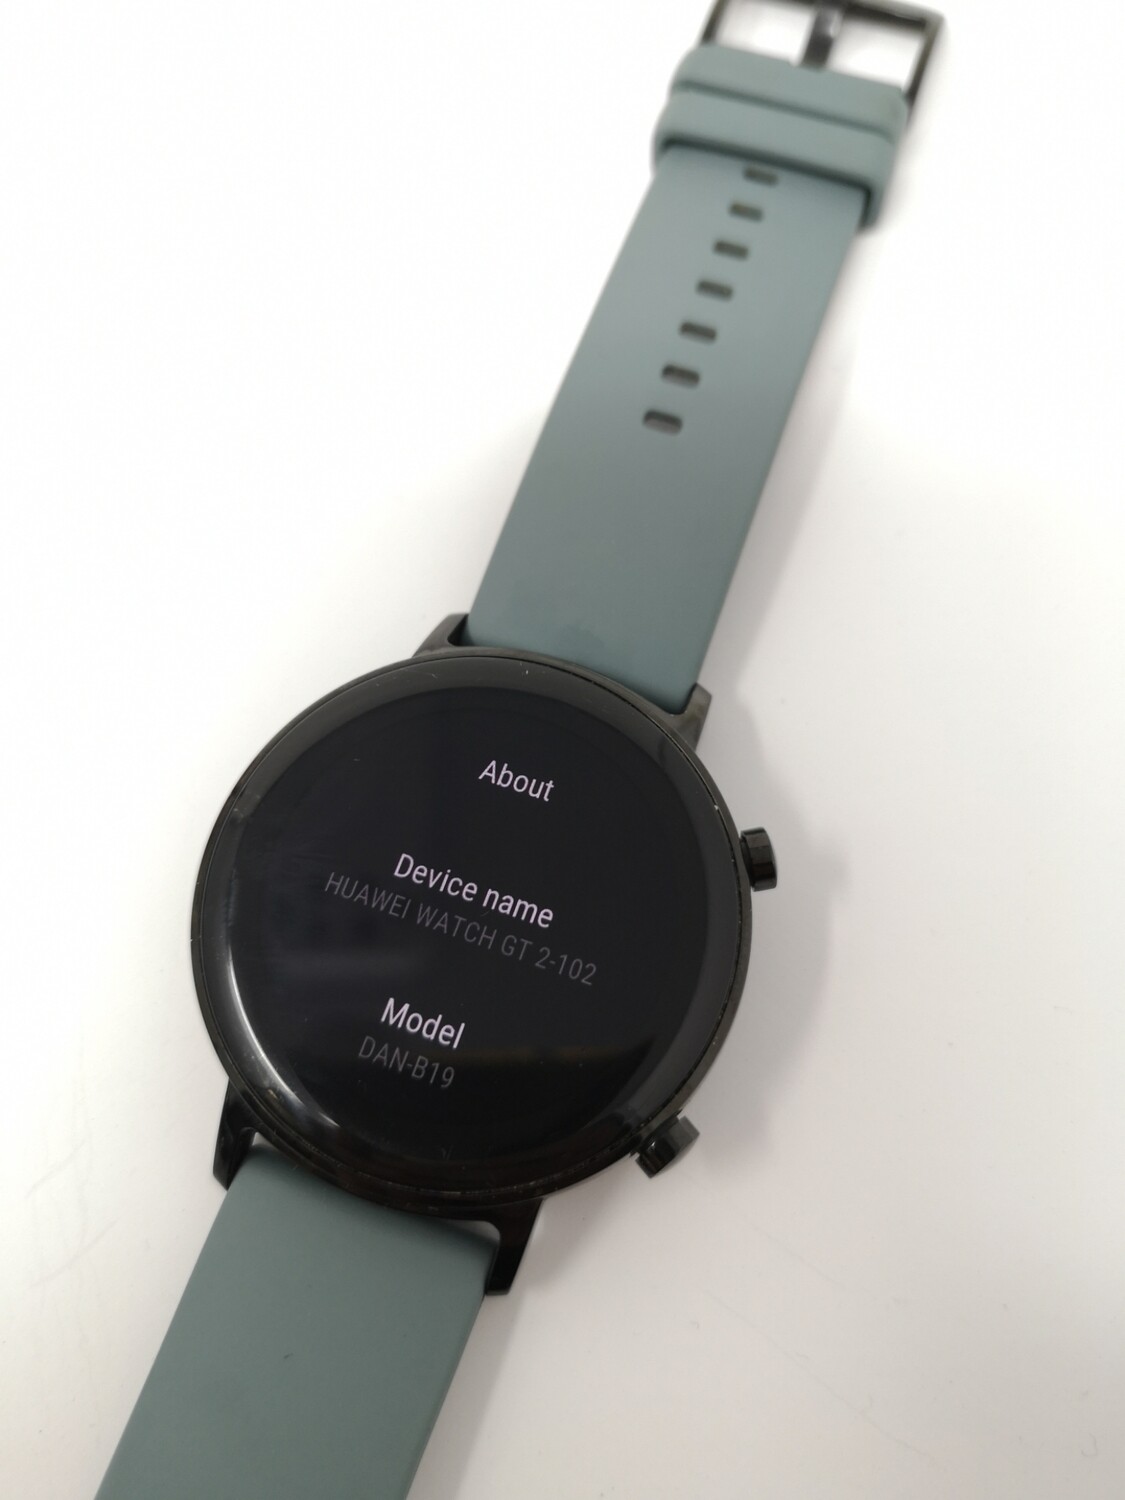 Huawei GT2 - 102 DAN-B19 Smart Watch